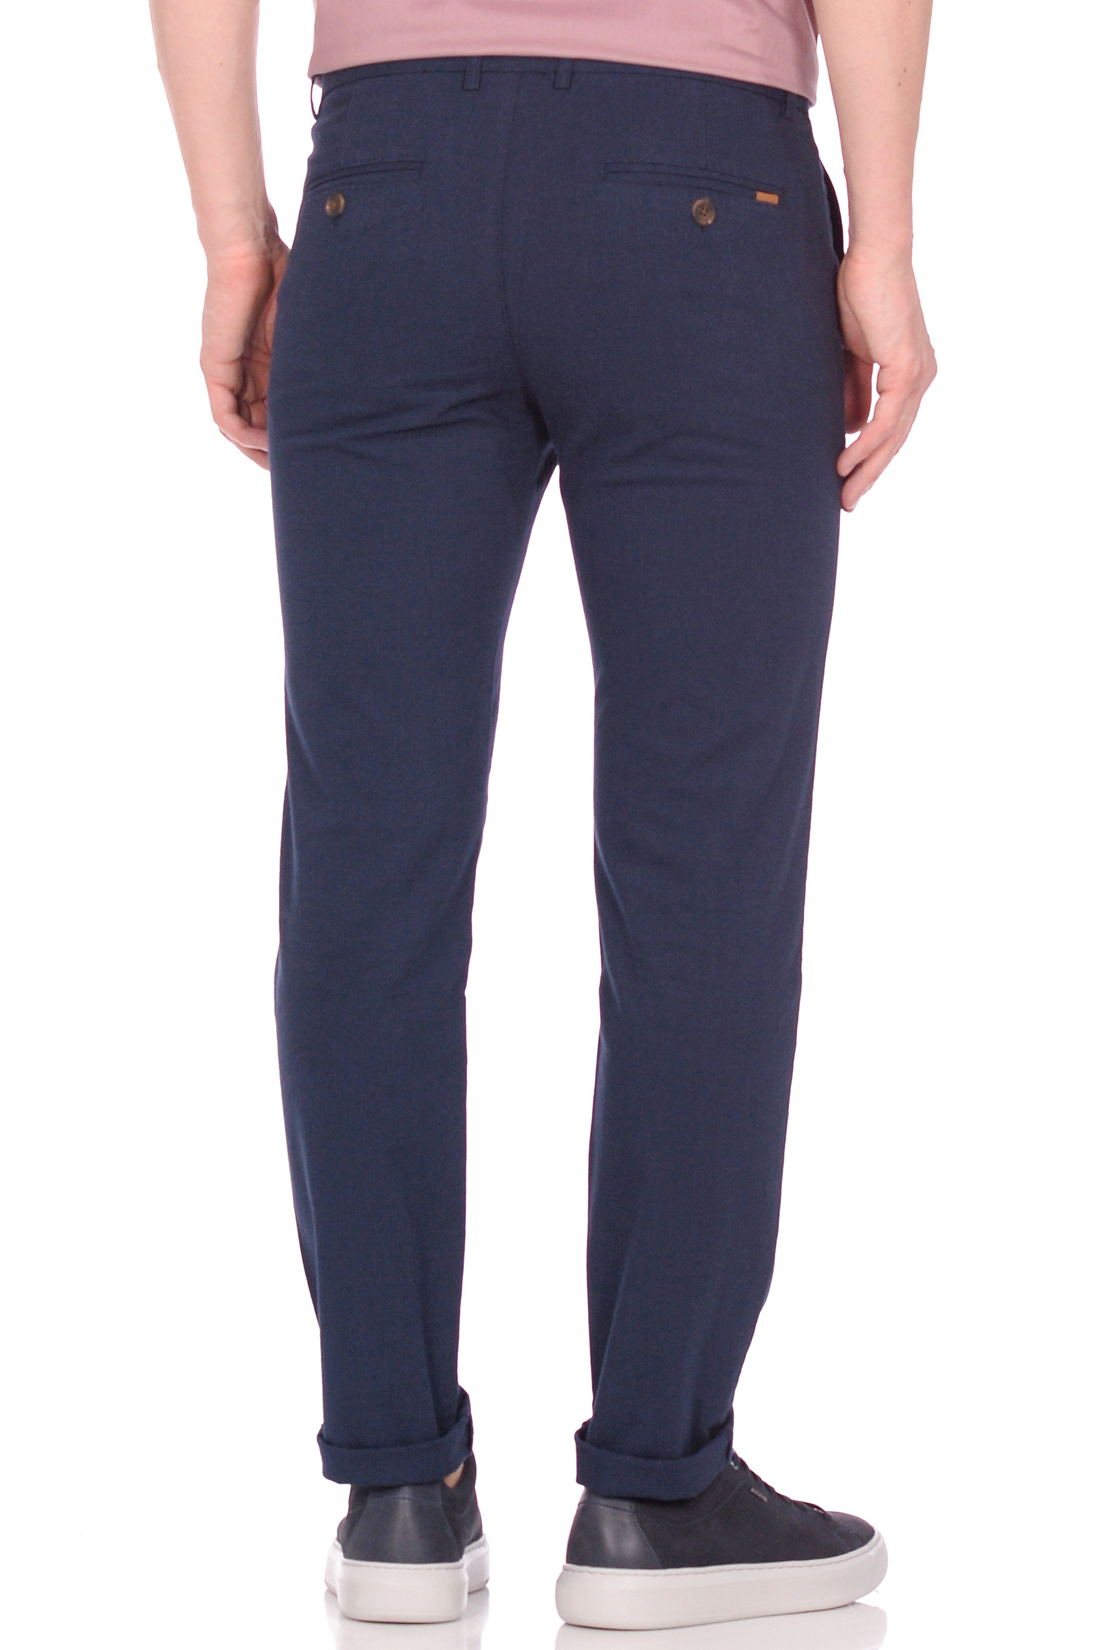 Костюмные брюки (арт. baon B799005), размер XL, цвет синий Костюмные брюки (арт. baon B799005) - фото 3